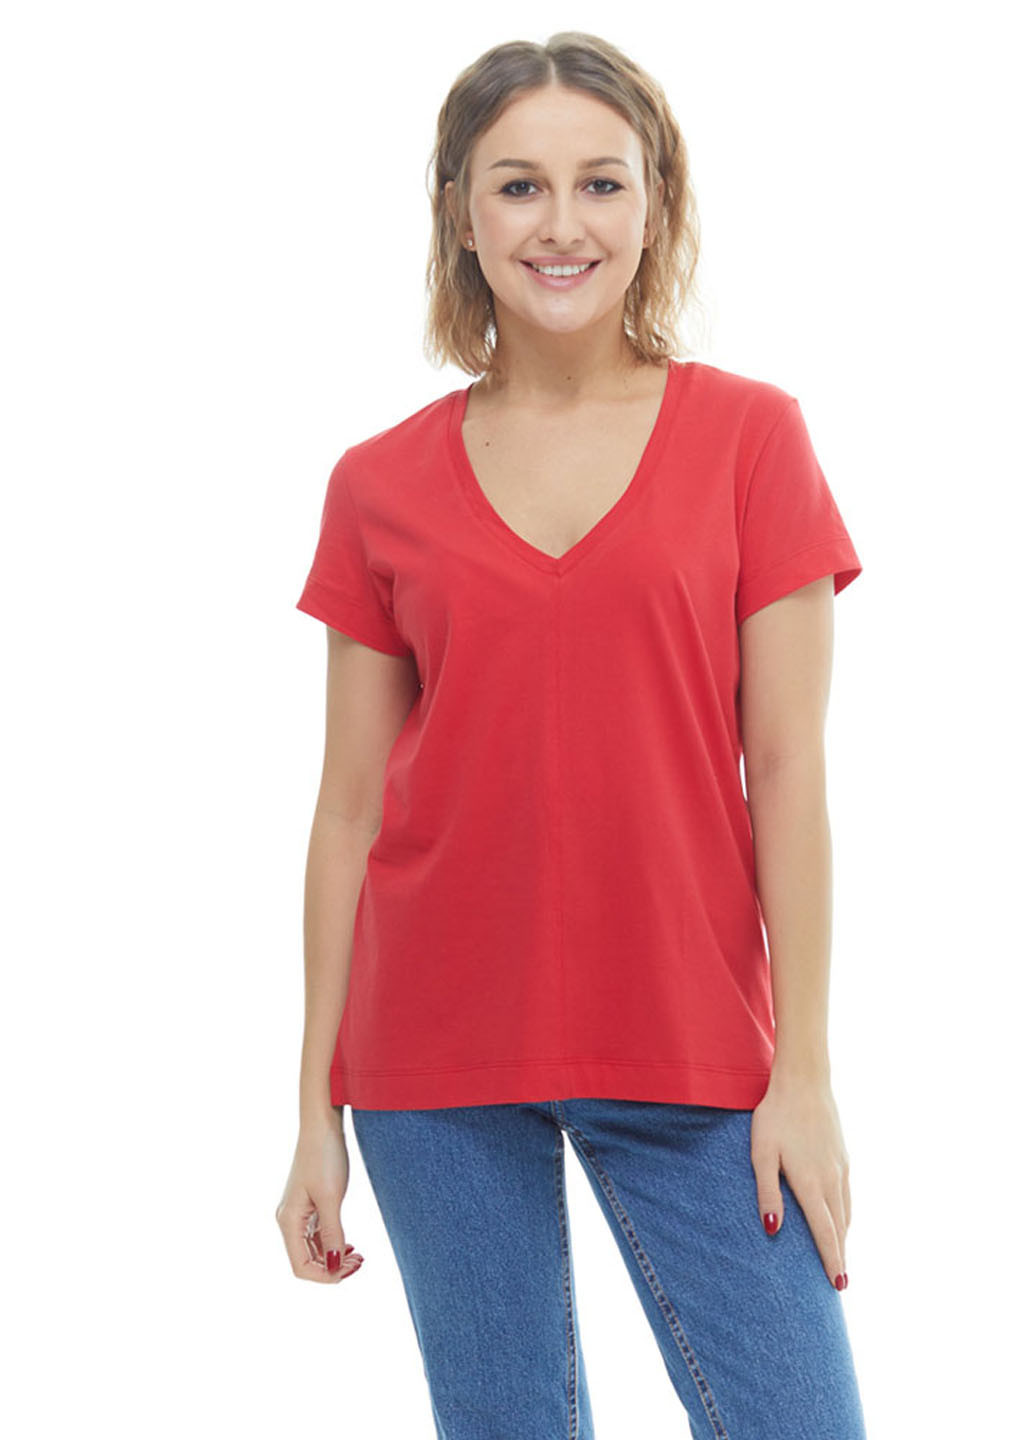 Светло-красная летняя футболка Promin.